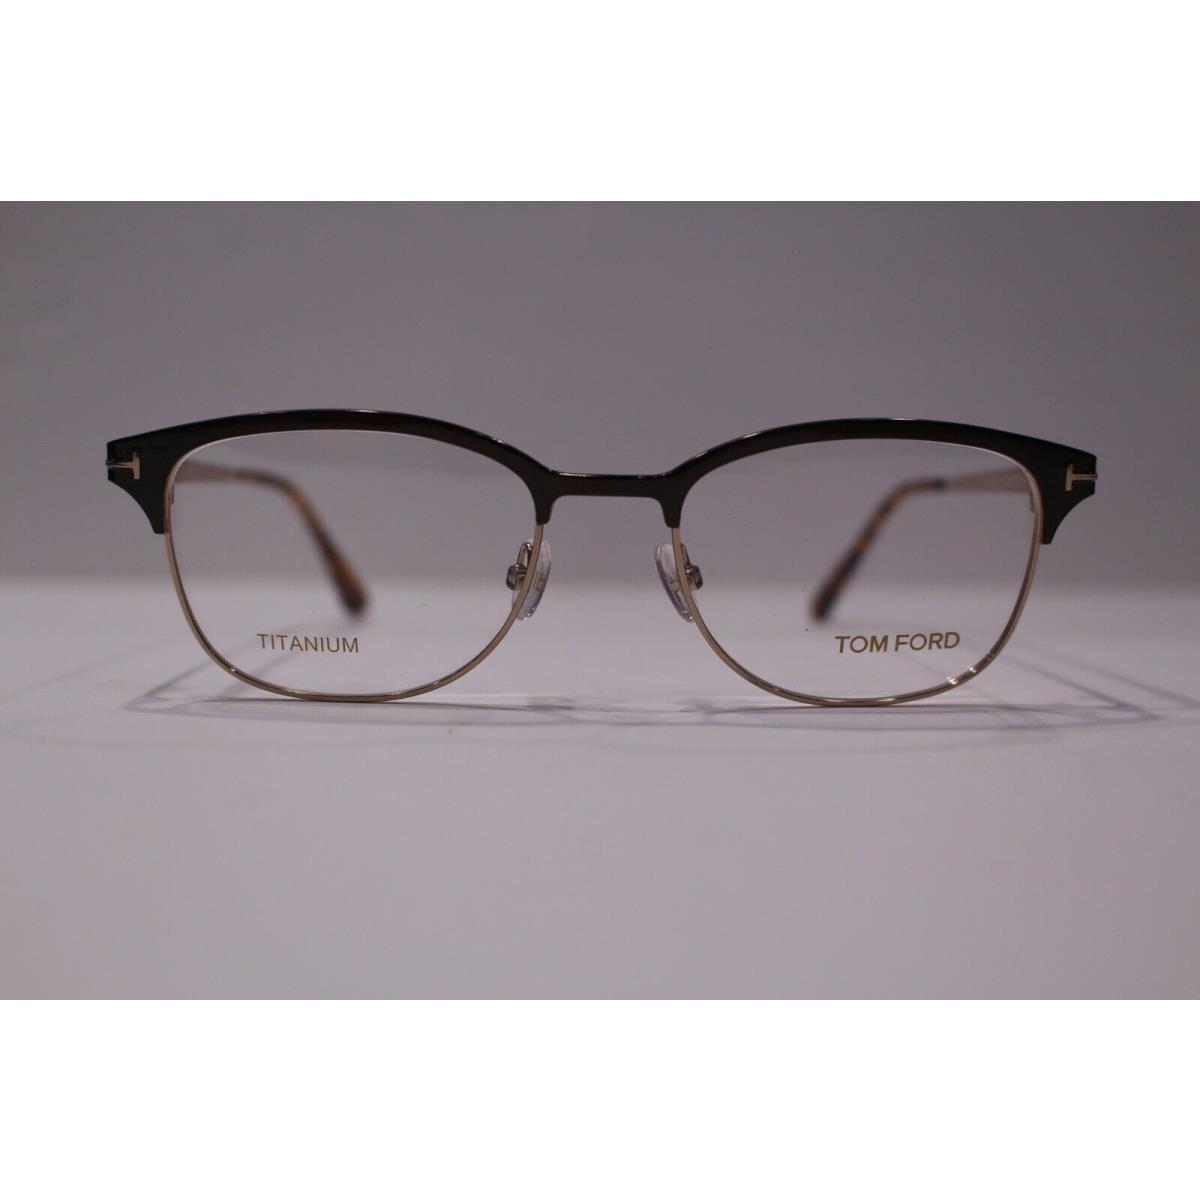 Tom Ford eyeglasses  - Metallic Brown/Light Havana Frame 0